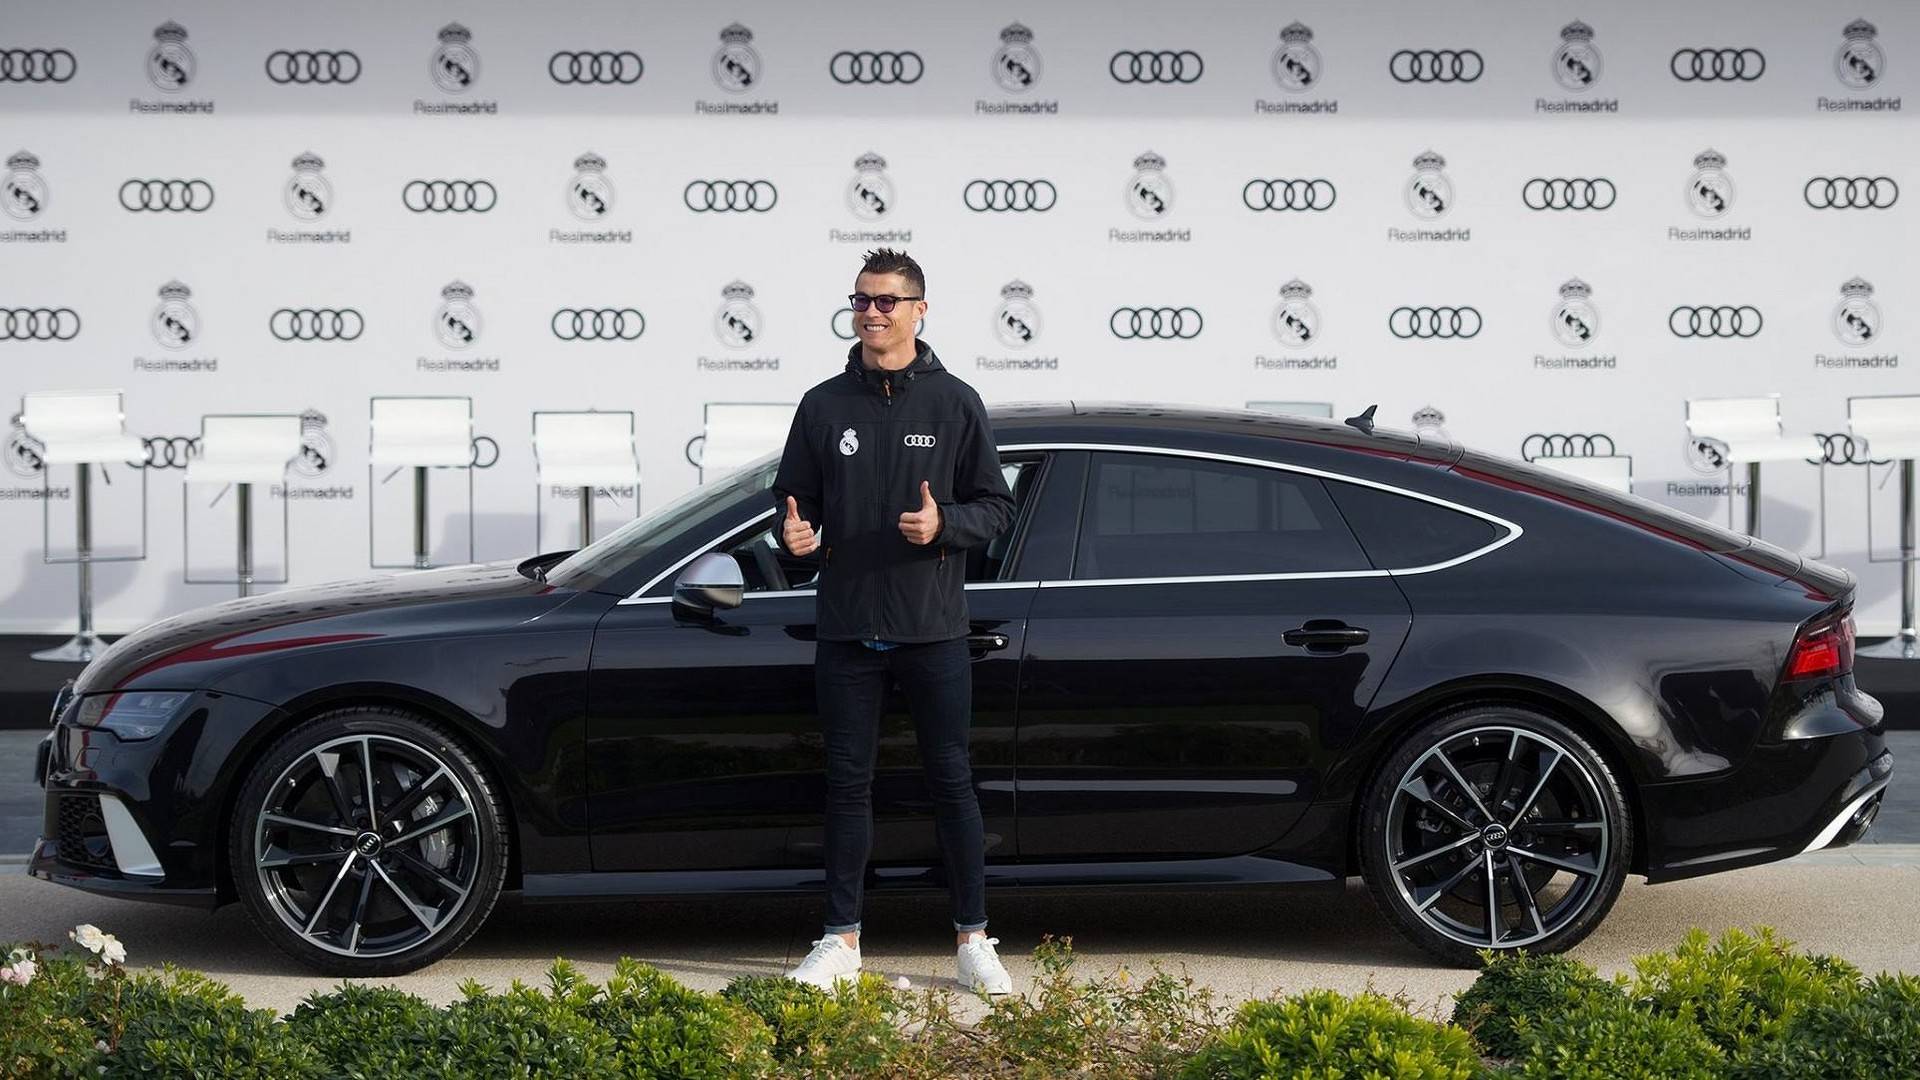 لاعبو ريال مدريد يستلمون سيارات أودي الجديدة “فيديو وصور”